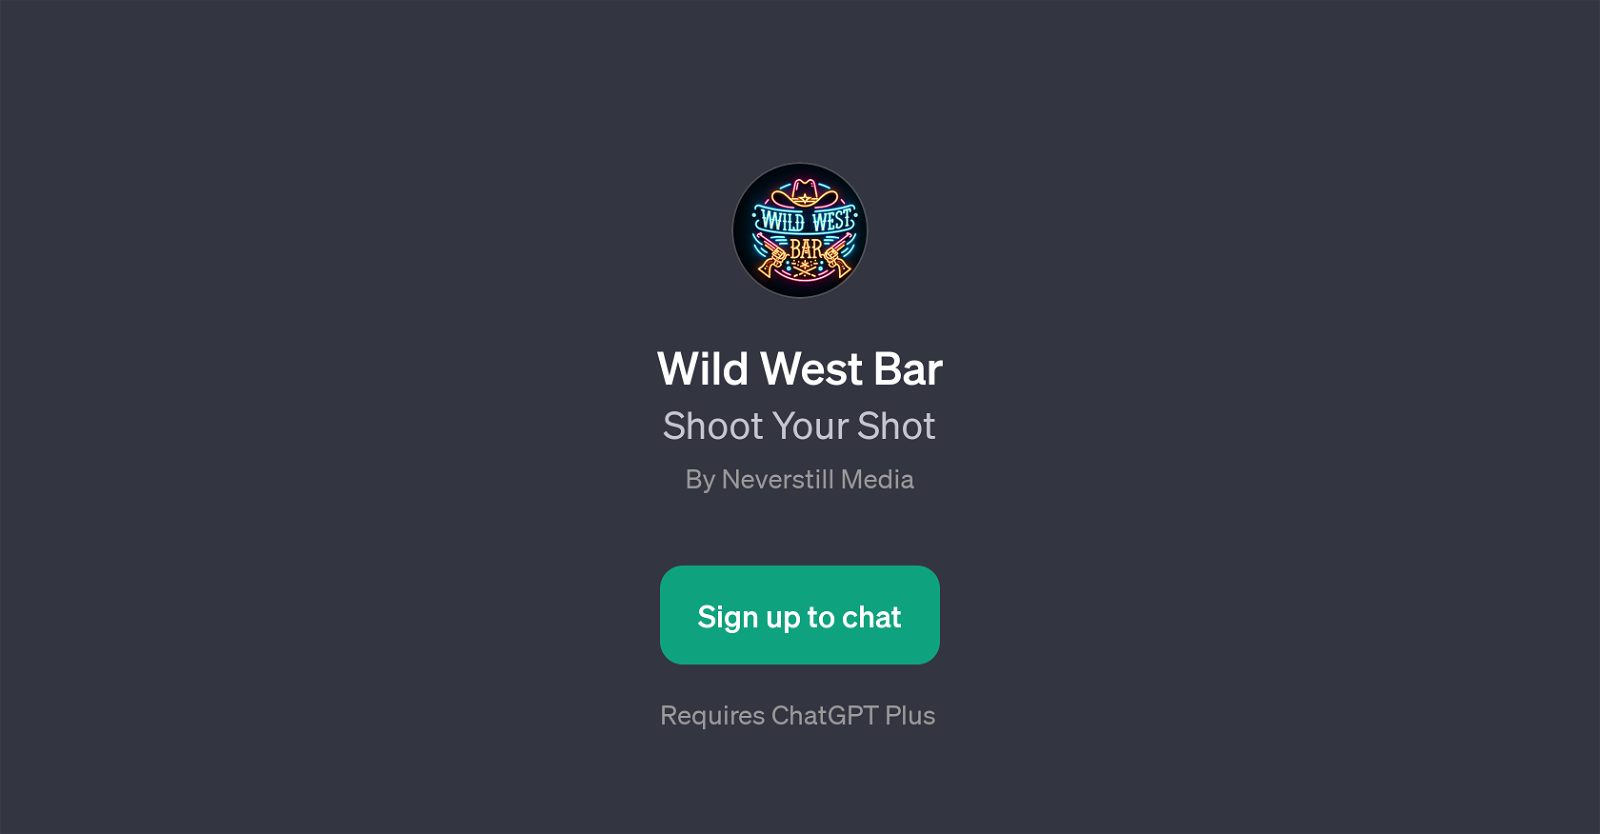 Wild West Bar website